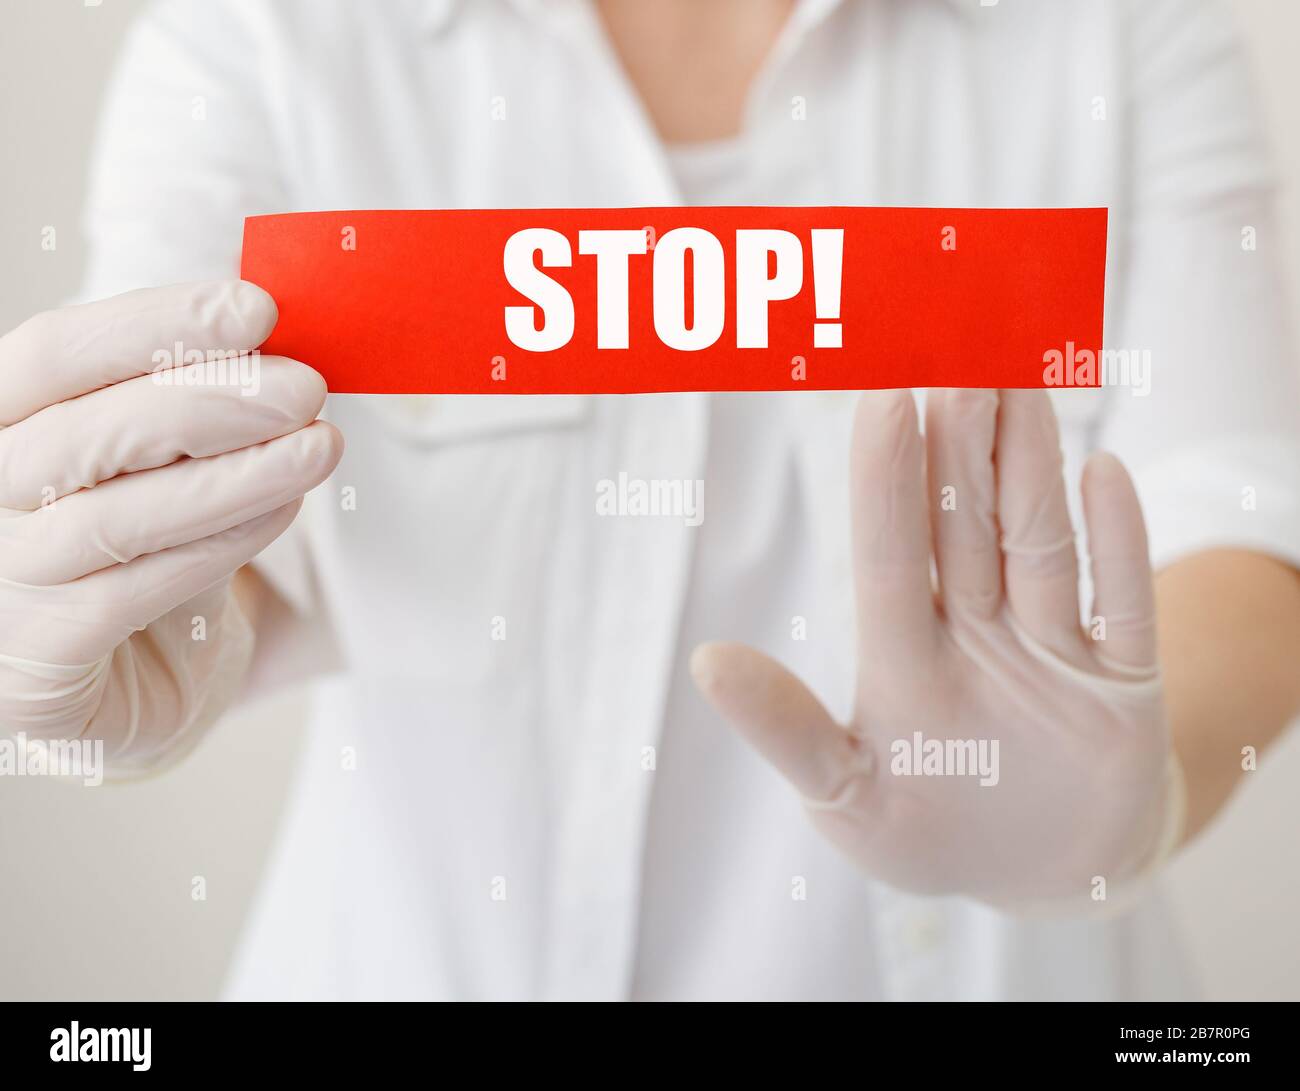 Mise en quarantaine du coronavirus, signe d'avertissement rouge avec texte Stop, le médecin montre un geste d'arrêt des mains pour arrêter l'éclosion du virus corona. Mains de médecin en manteau blanc Banque D'Images